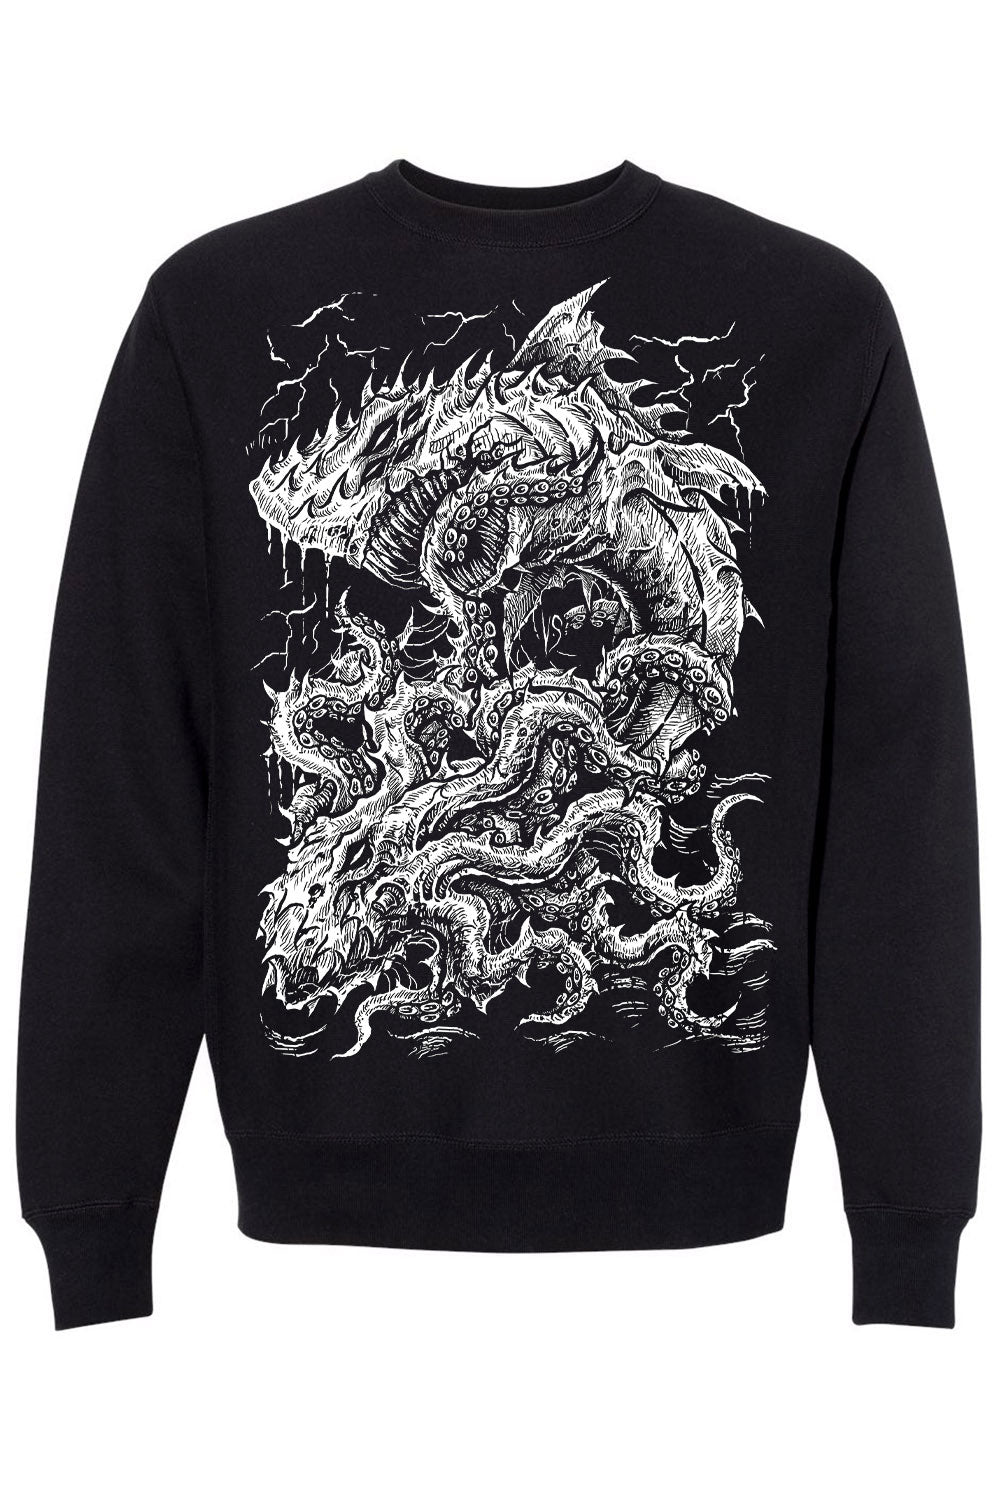 Megalodon vs The Kraken Sweatshirt